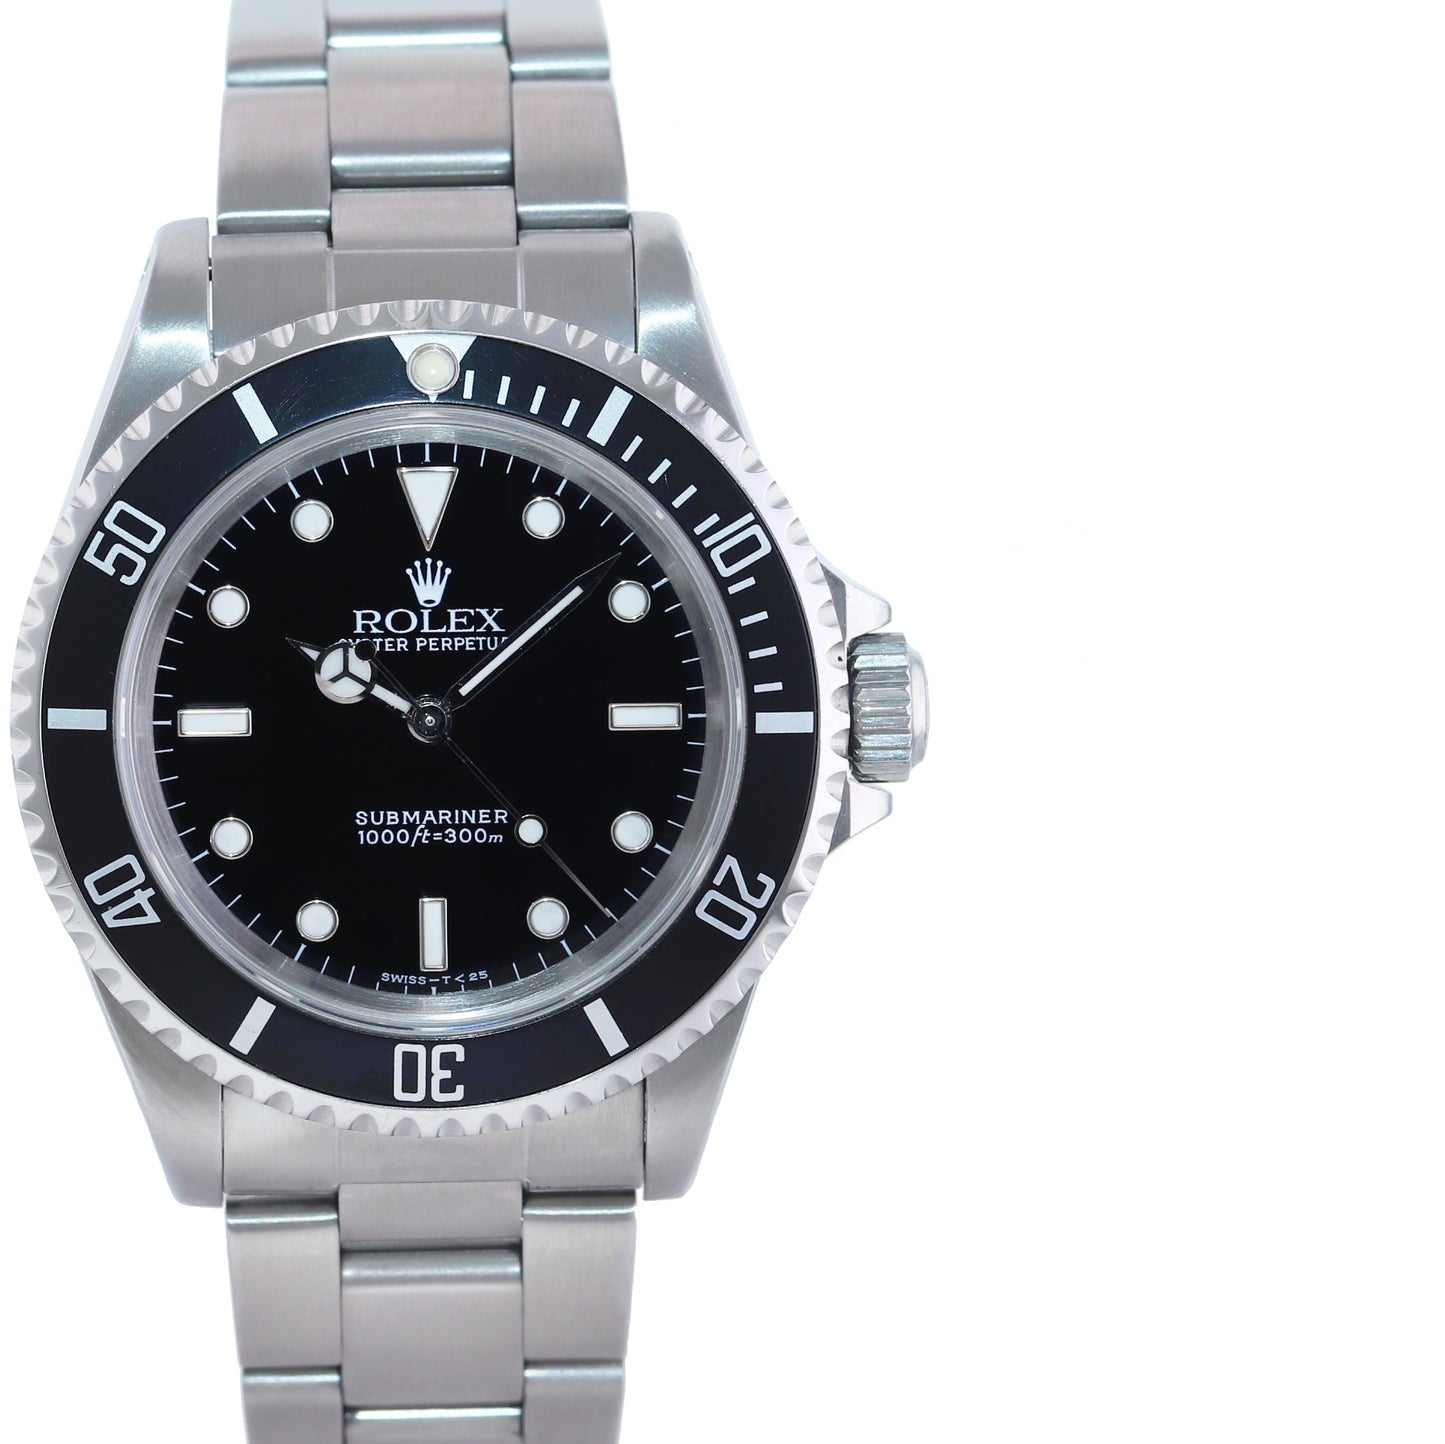 1998 Rolex Submariner No-Date 2 line Tritium dial 14060 Steel Black 40mm Watch Box